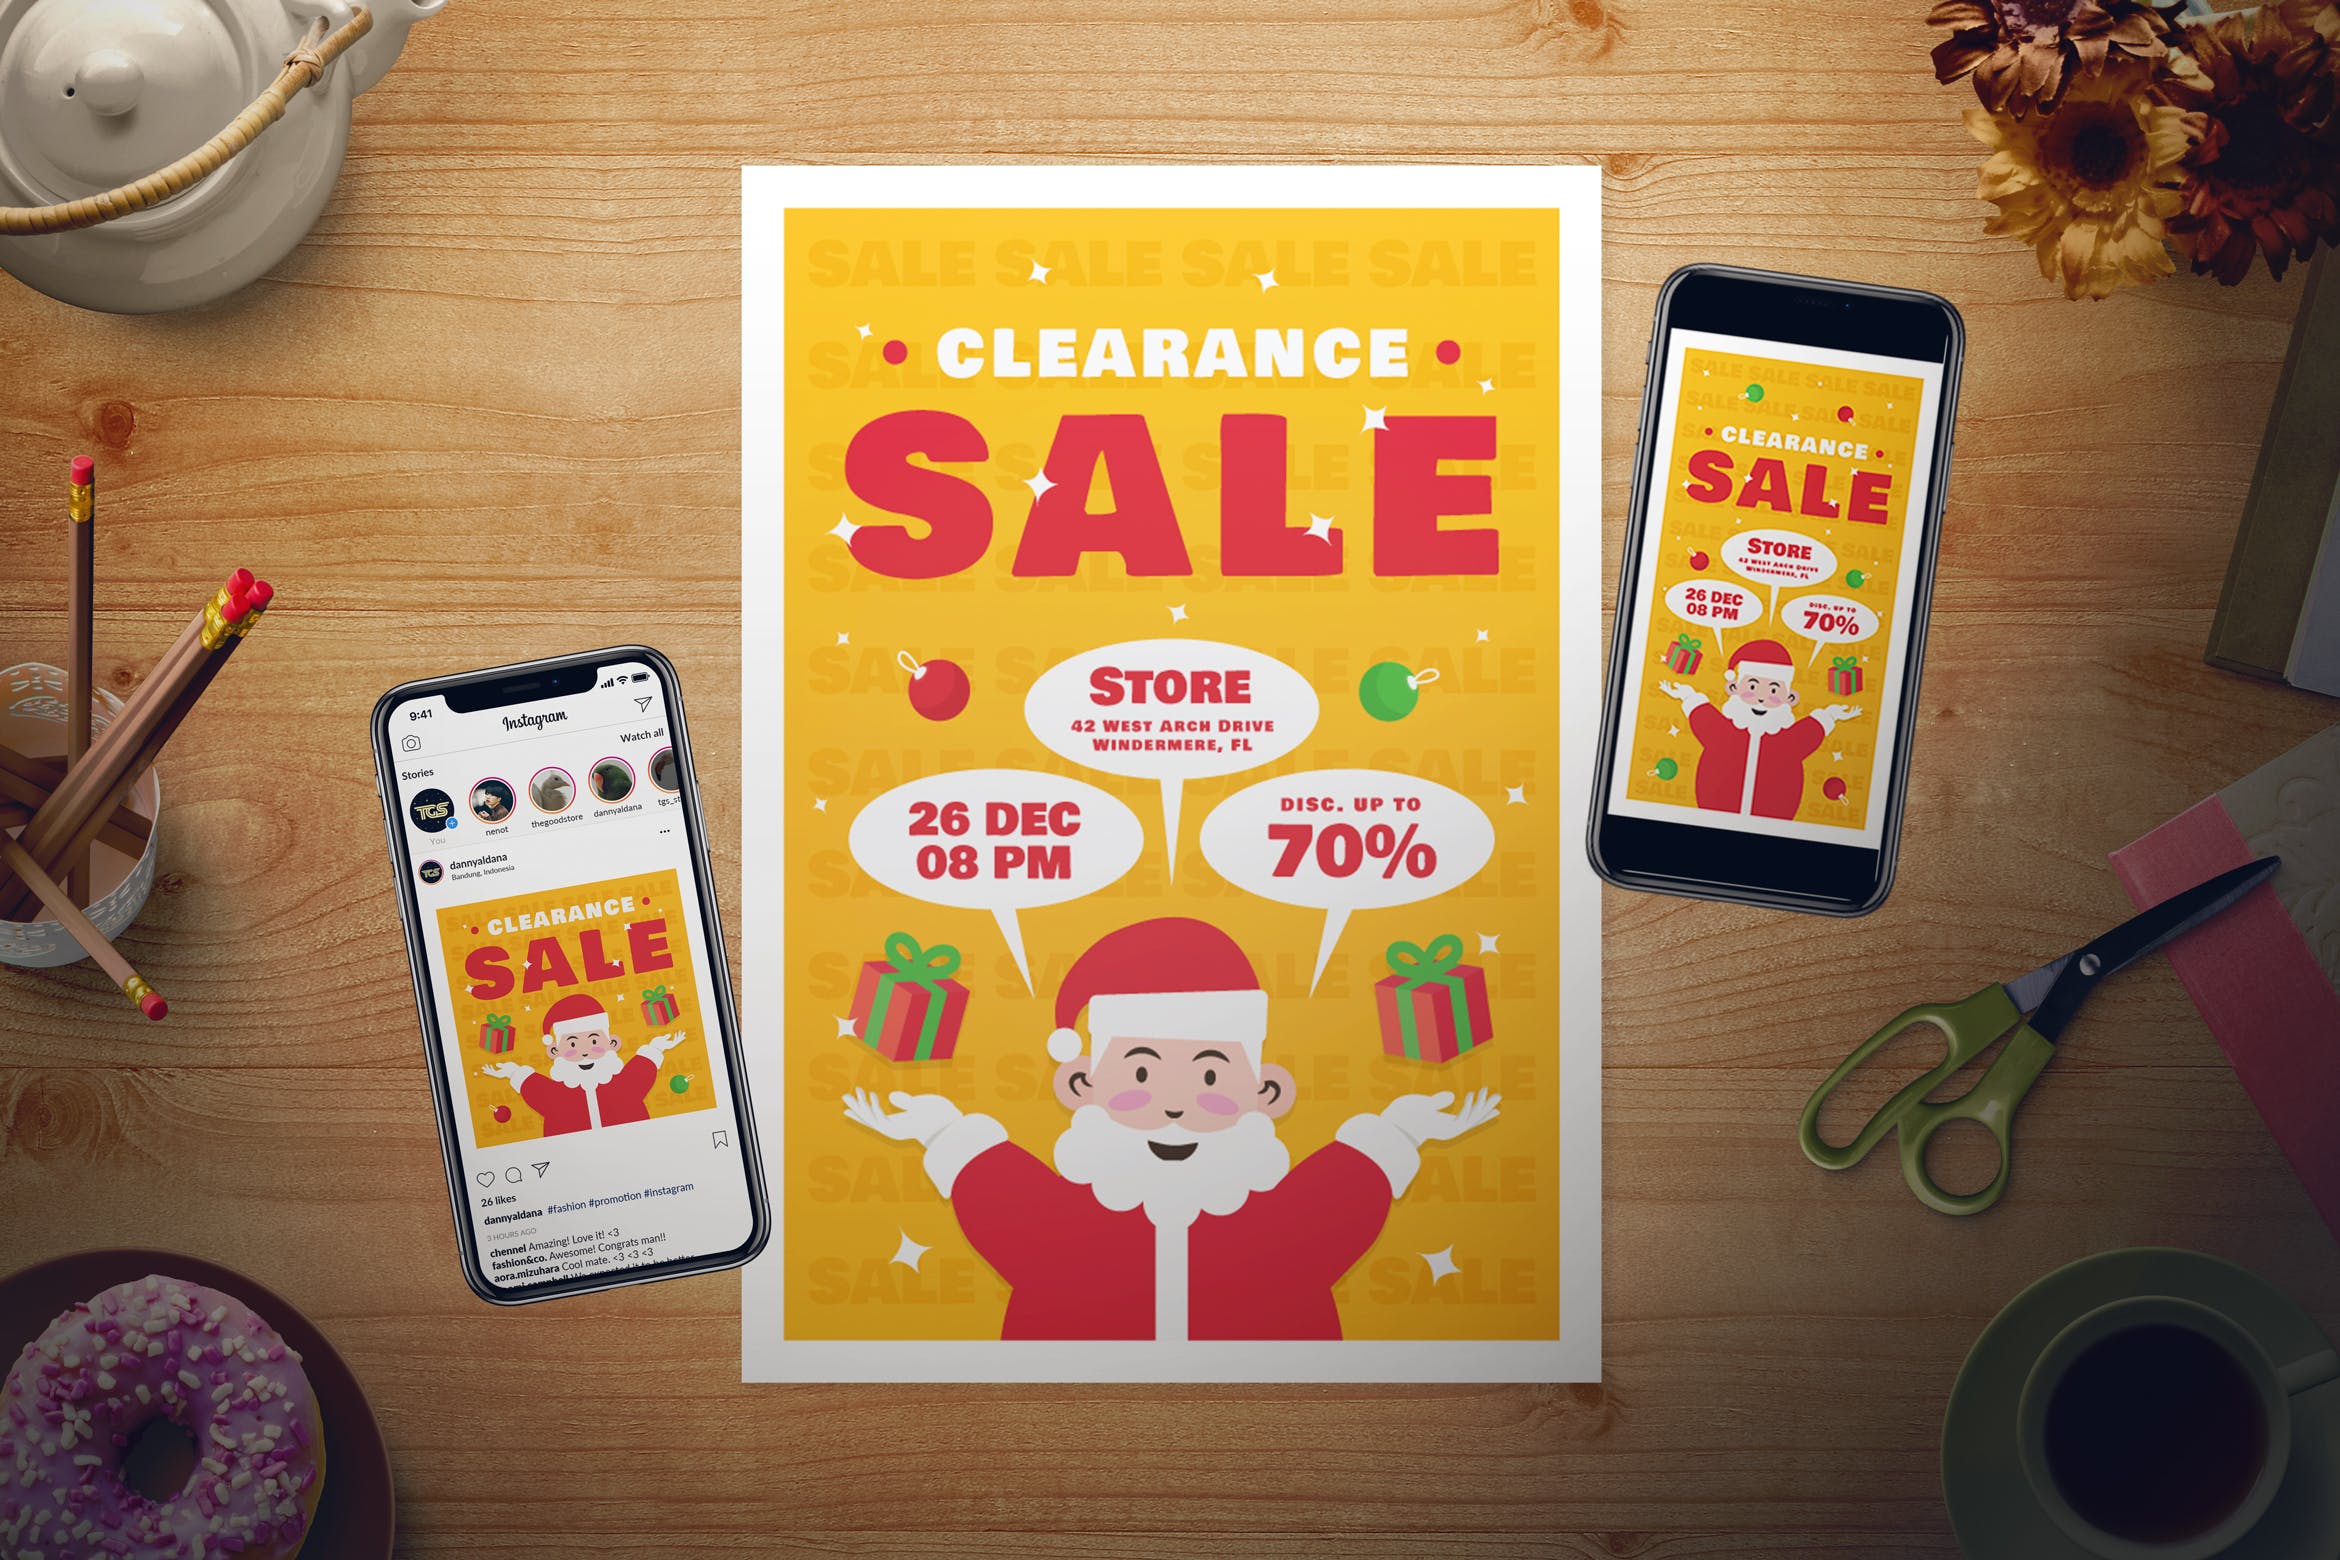 店铺圣诞节促销活动传单海报设计模板 Christmas Sale Flyer Set插图